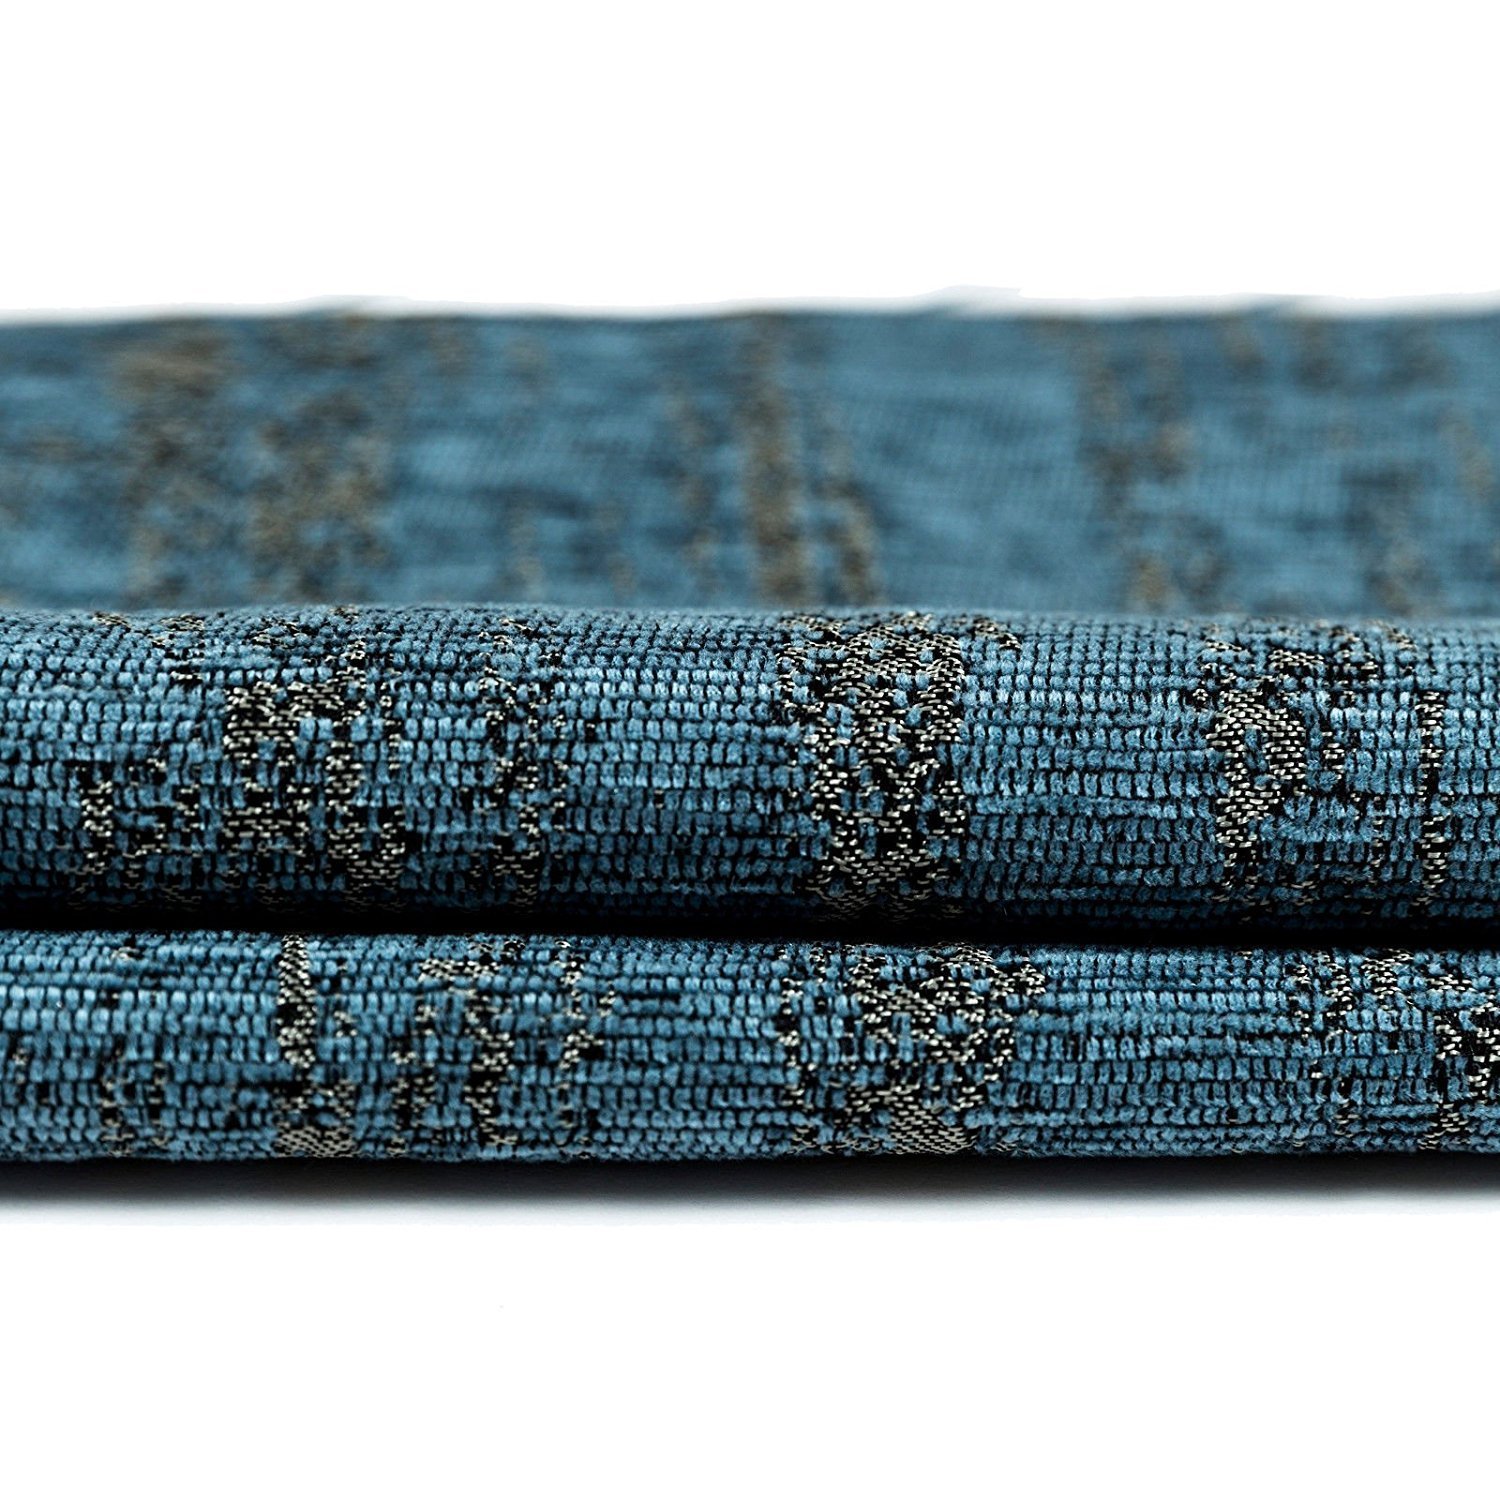 McAlister Textiles Strukturierter Chenille | Stoff als Meterware in Denim Blau | Per Meter | 140cm Breite | Deko Textil Material für Vorhänge, Bezüge, Decken, Polster